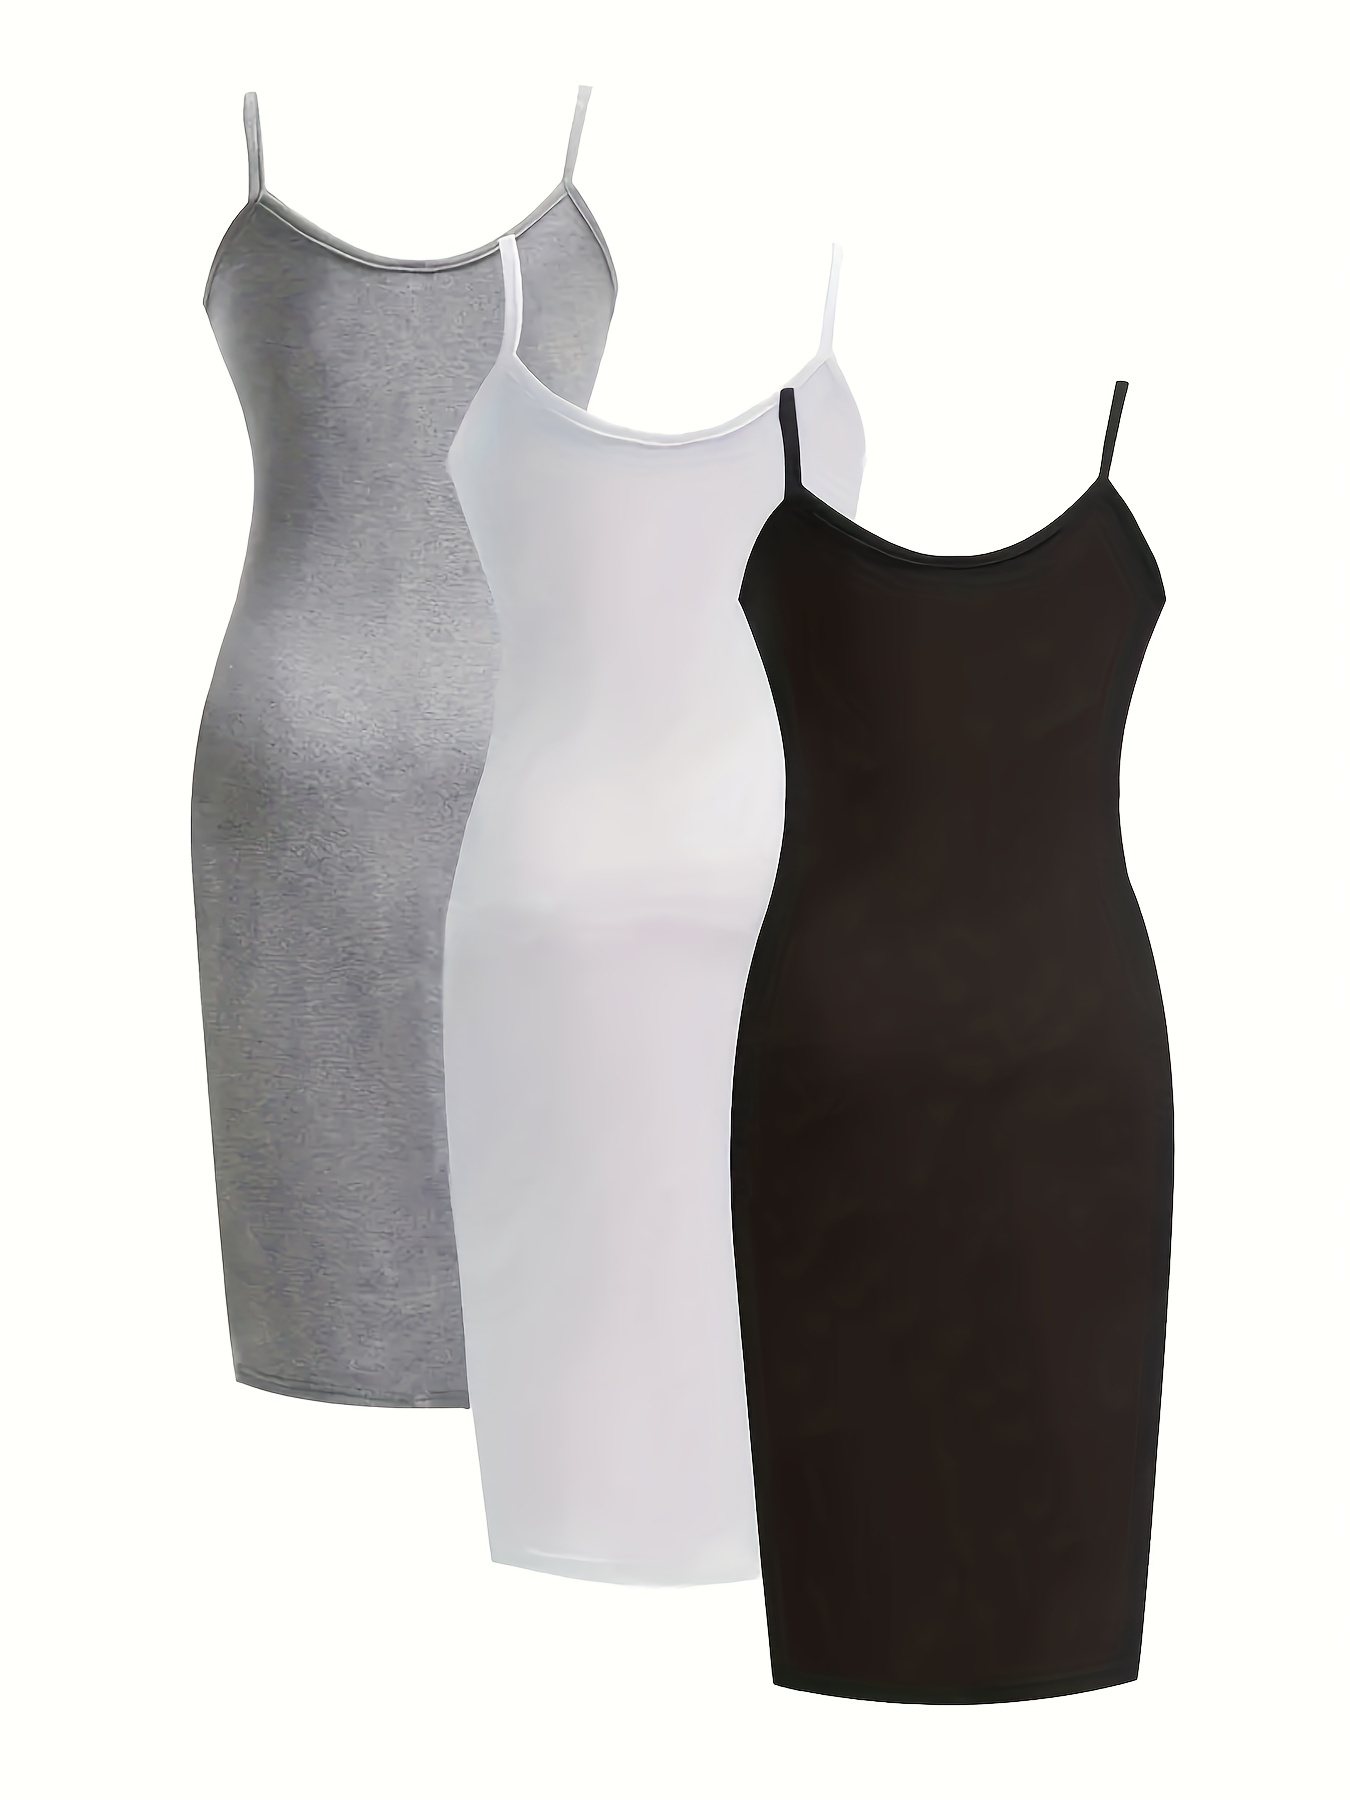 3パックプラスサイズカジュアルナイトドレスセット、女性用プラス